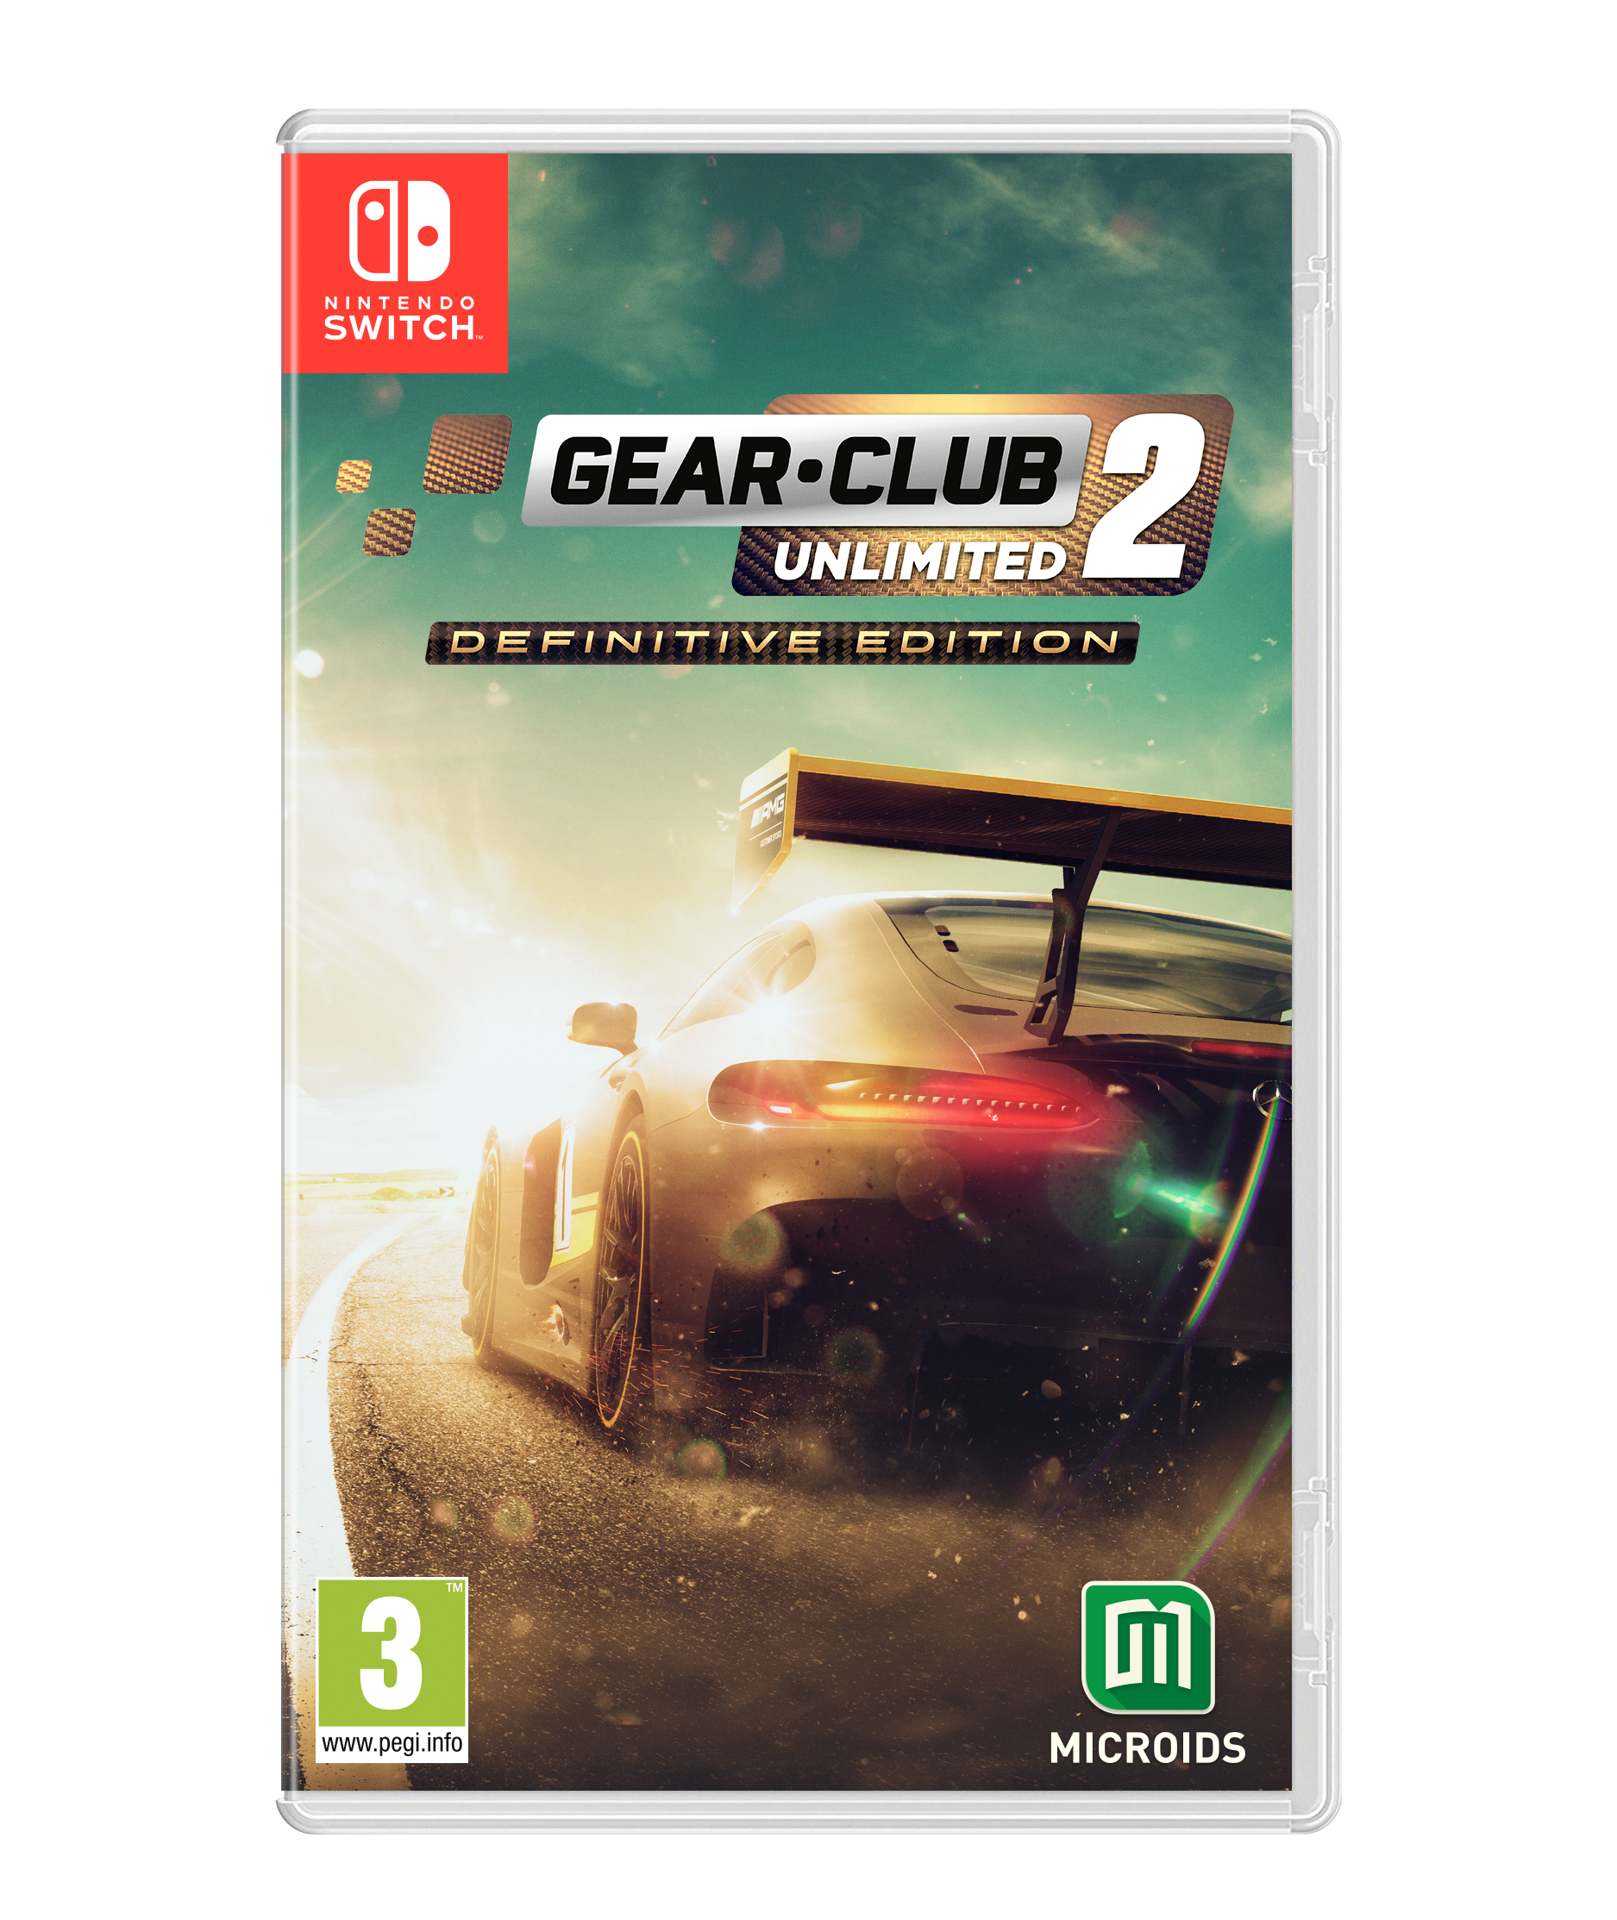 Gear.Club Unlimited 2 - Definitive Edition